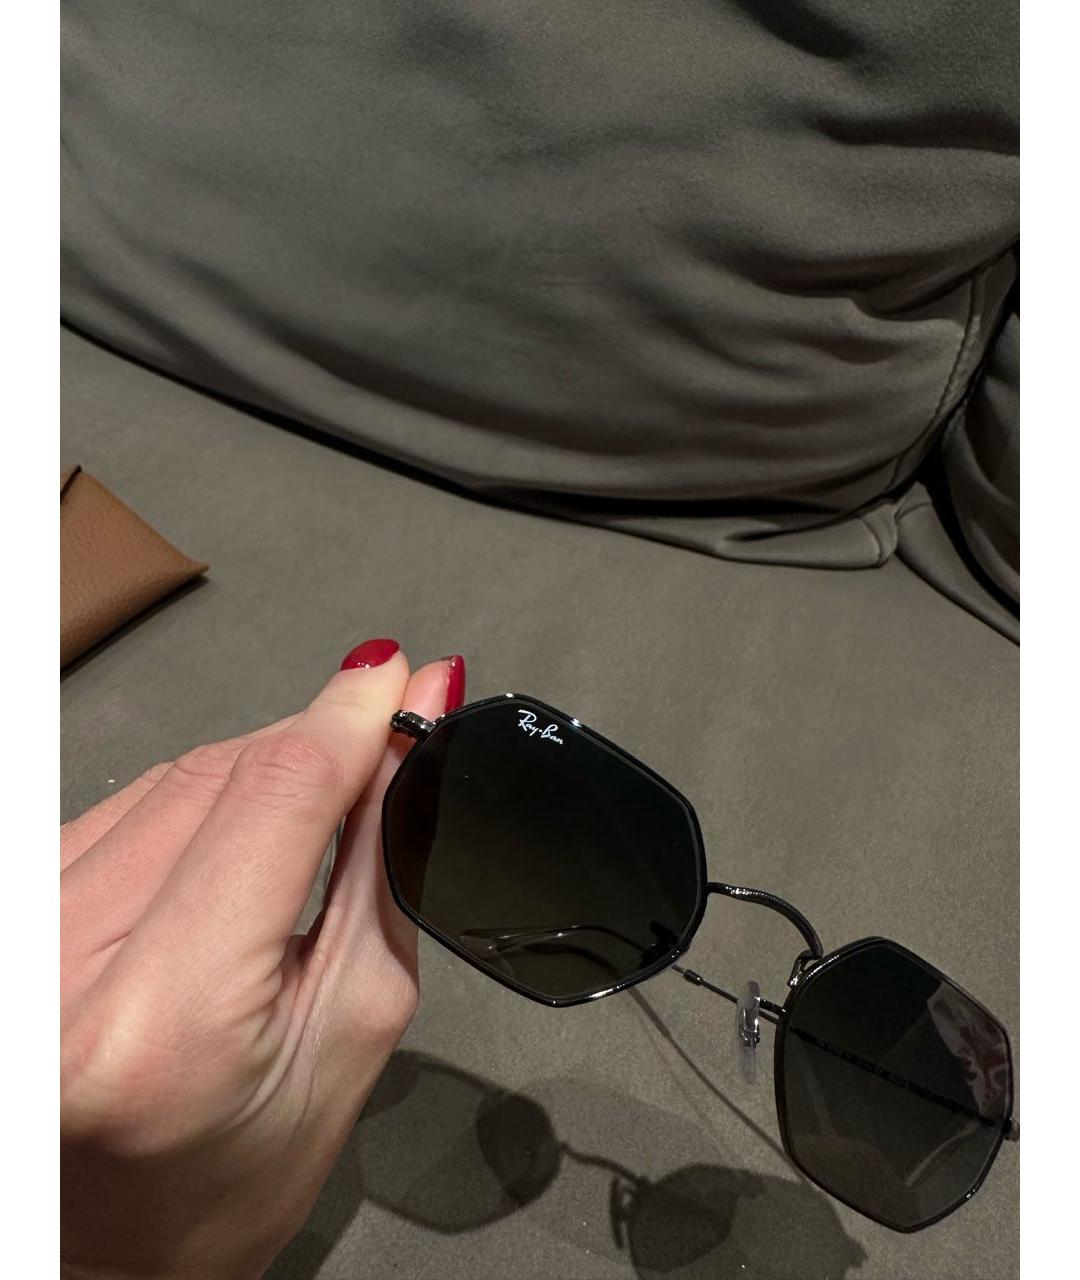 RAY BAN Антрацитовые металлические солнцезащитные очки, фото 3